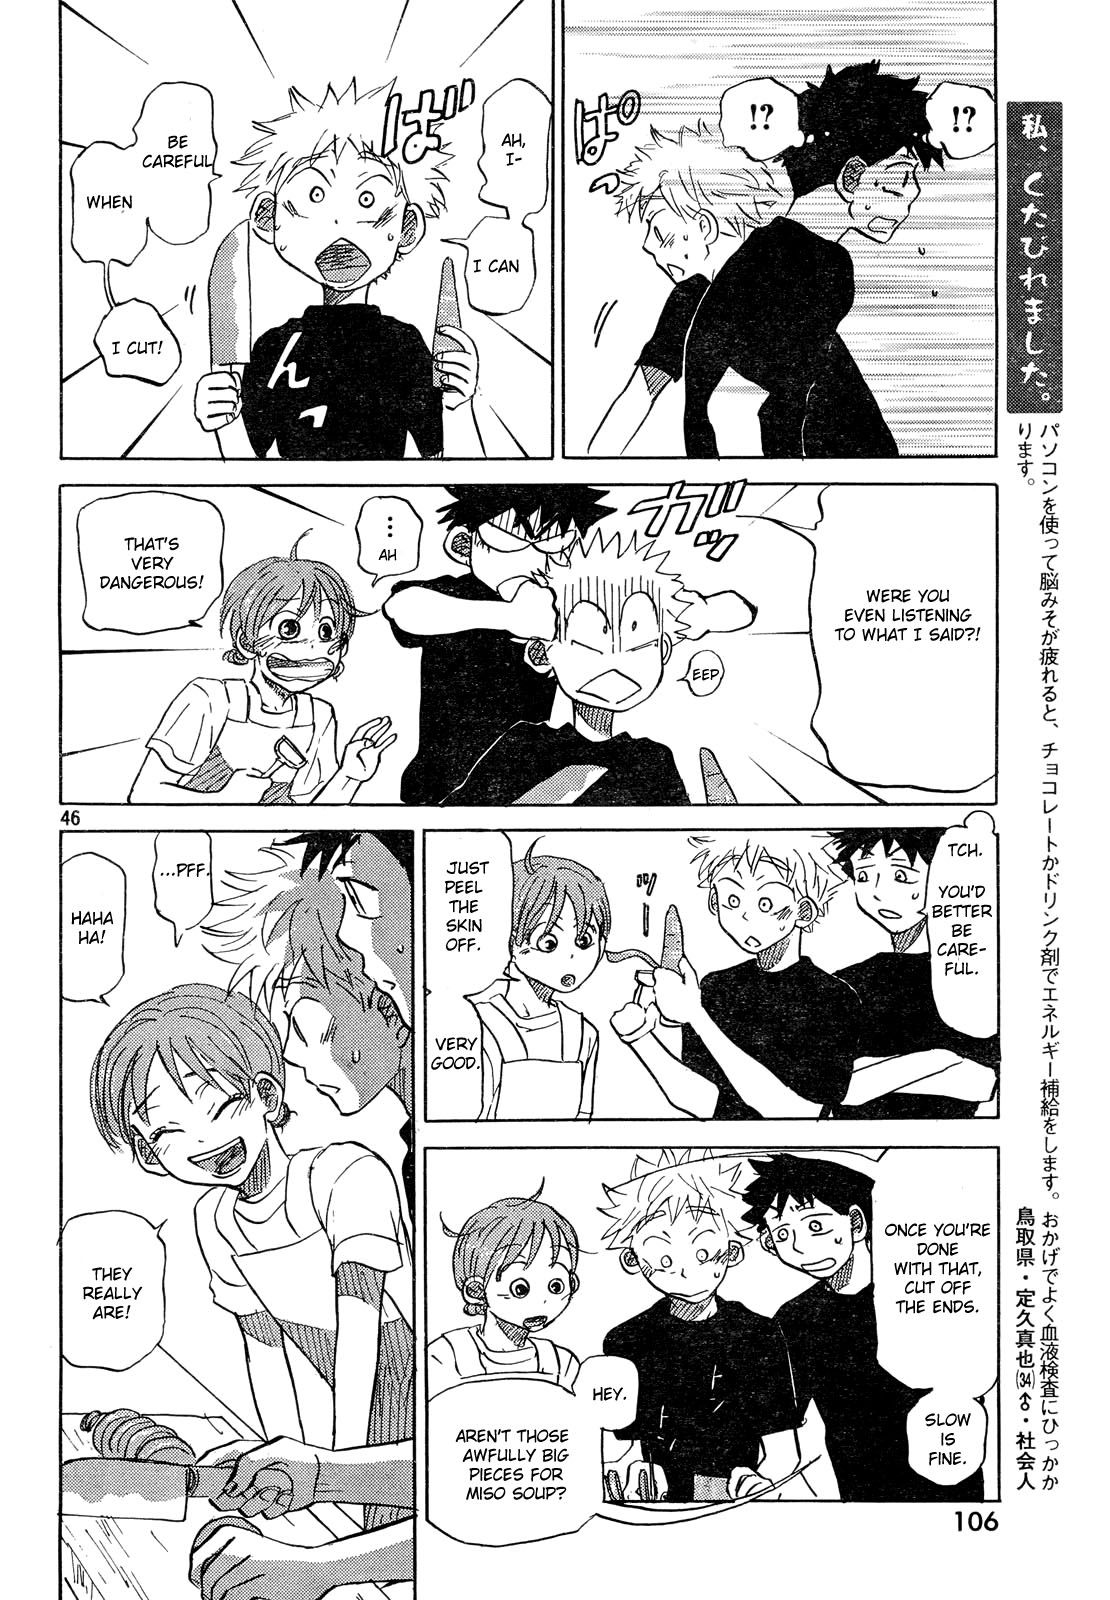 Ookiku Furikabutte - 59 page p_00047